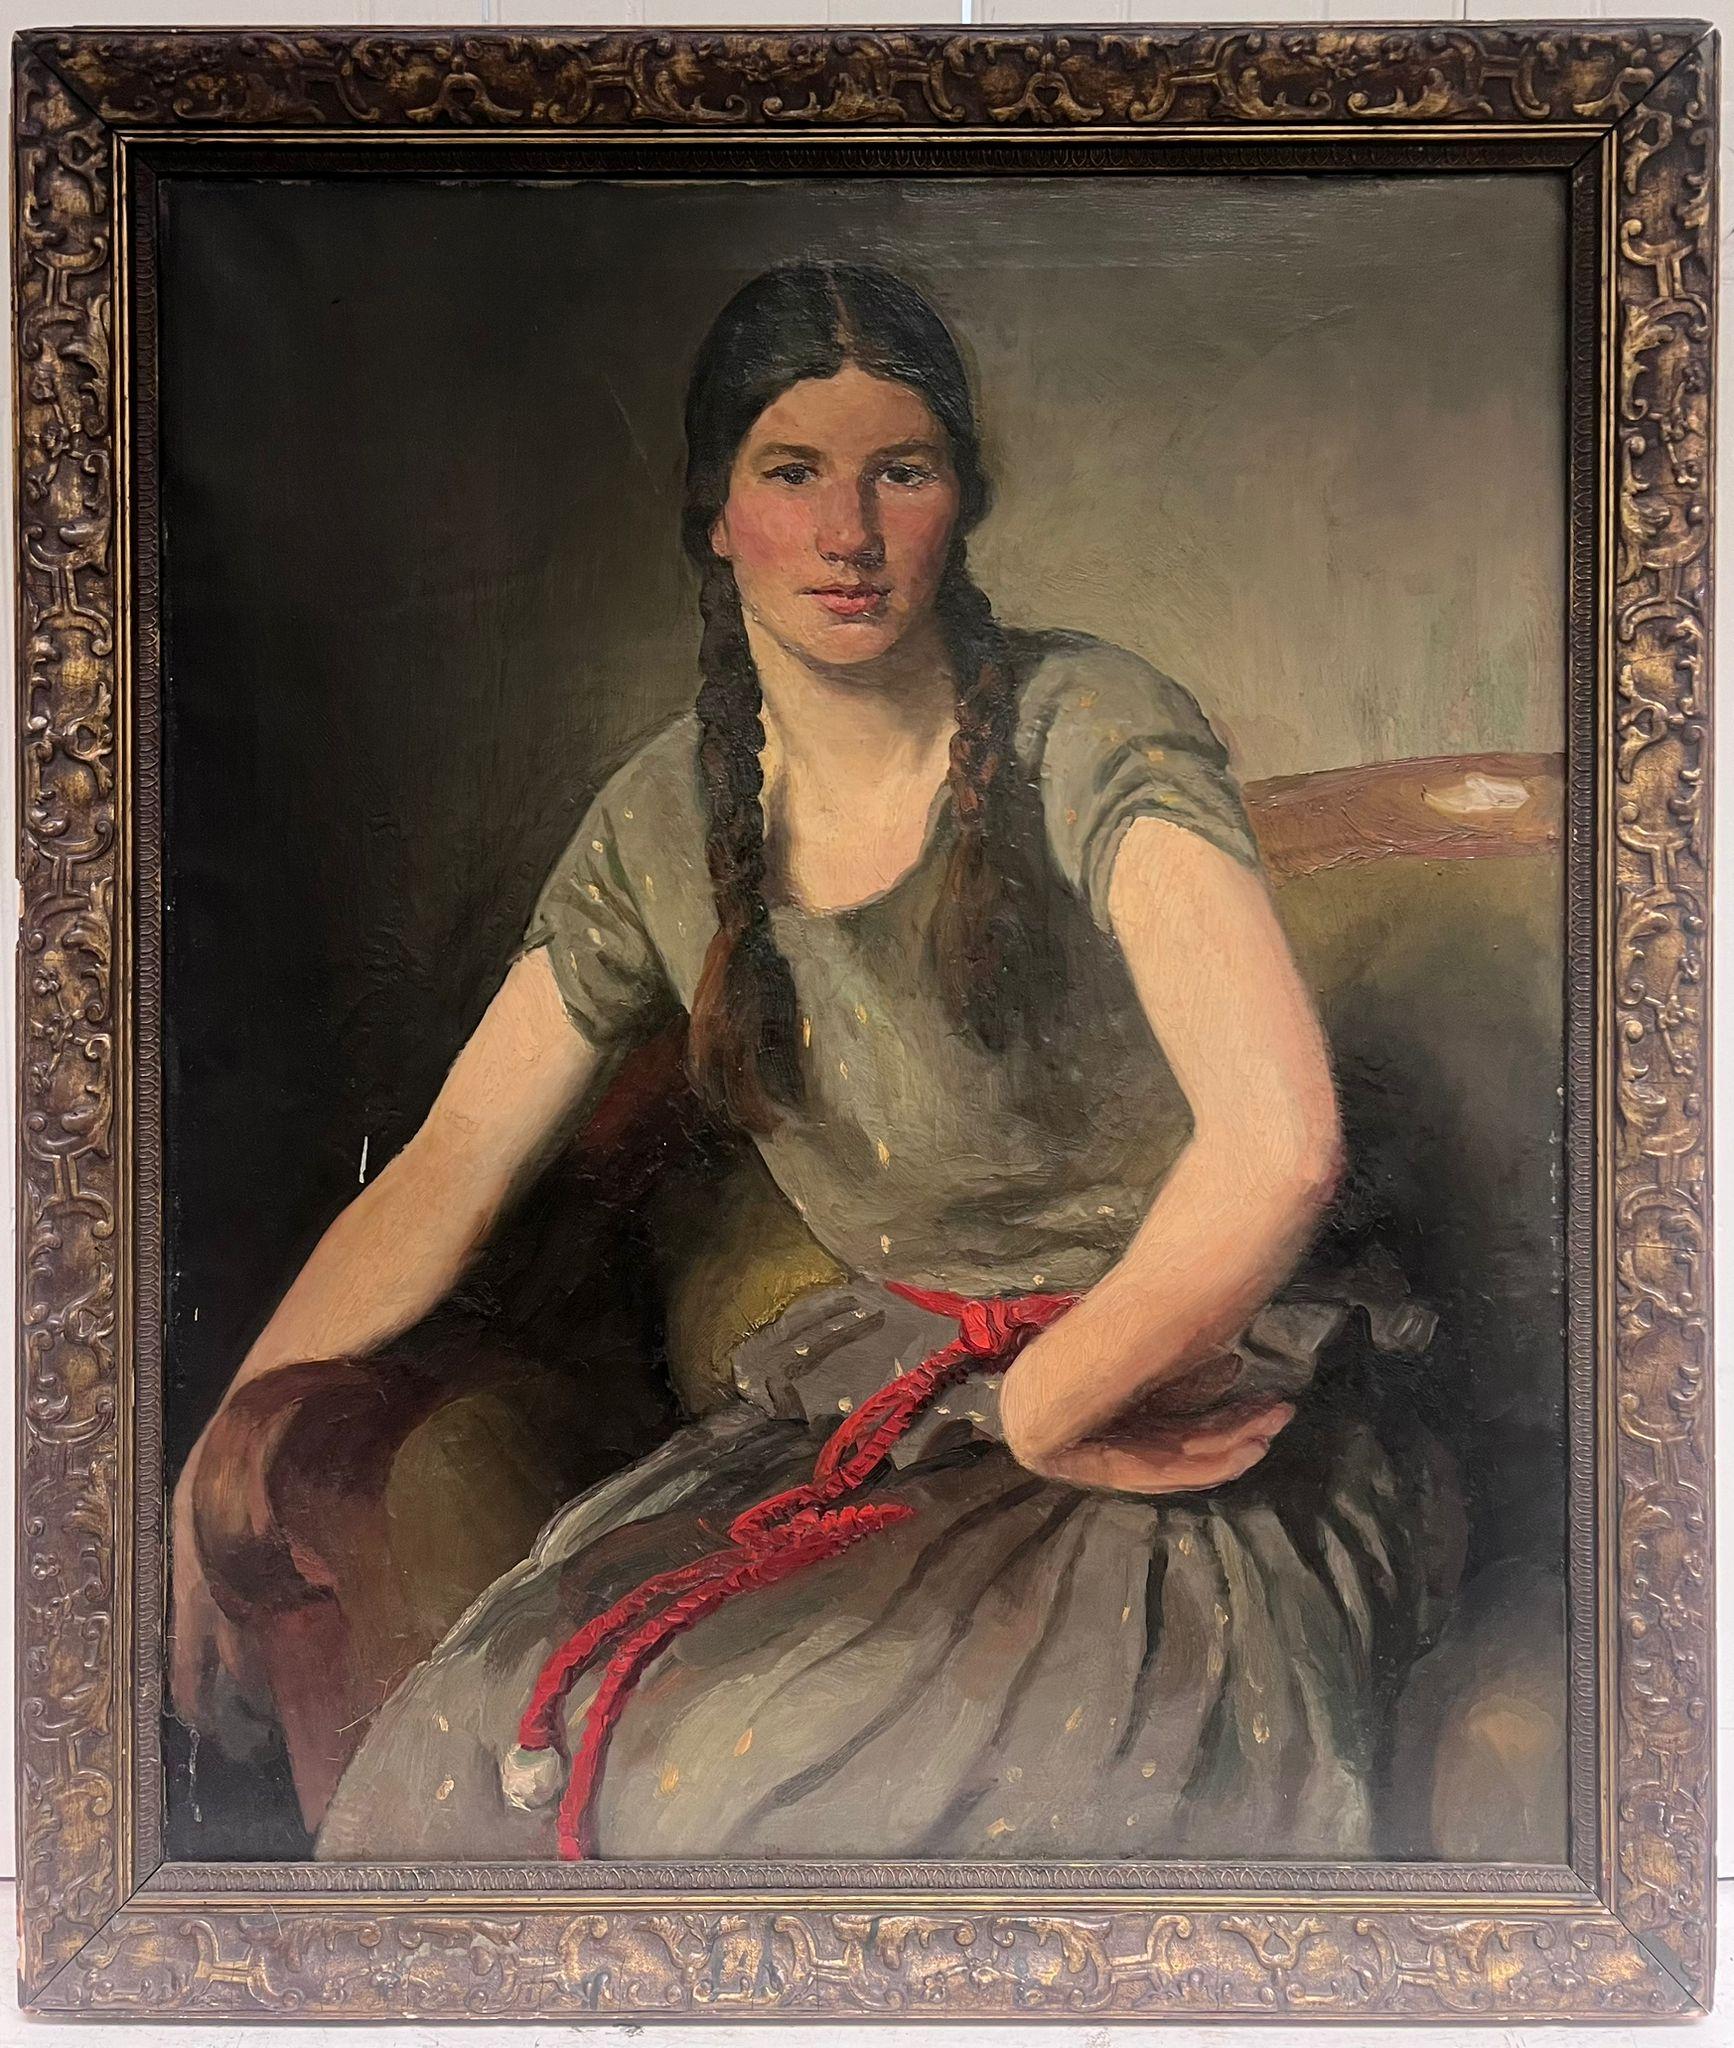 Großes antikes europäisches Porträt eines Mädchens mit Plaketten in Haar, Öl auf Leinwand – Painting von European Late 19thC